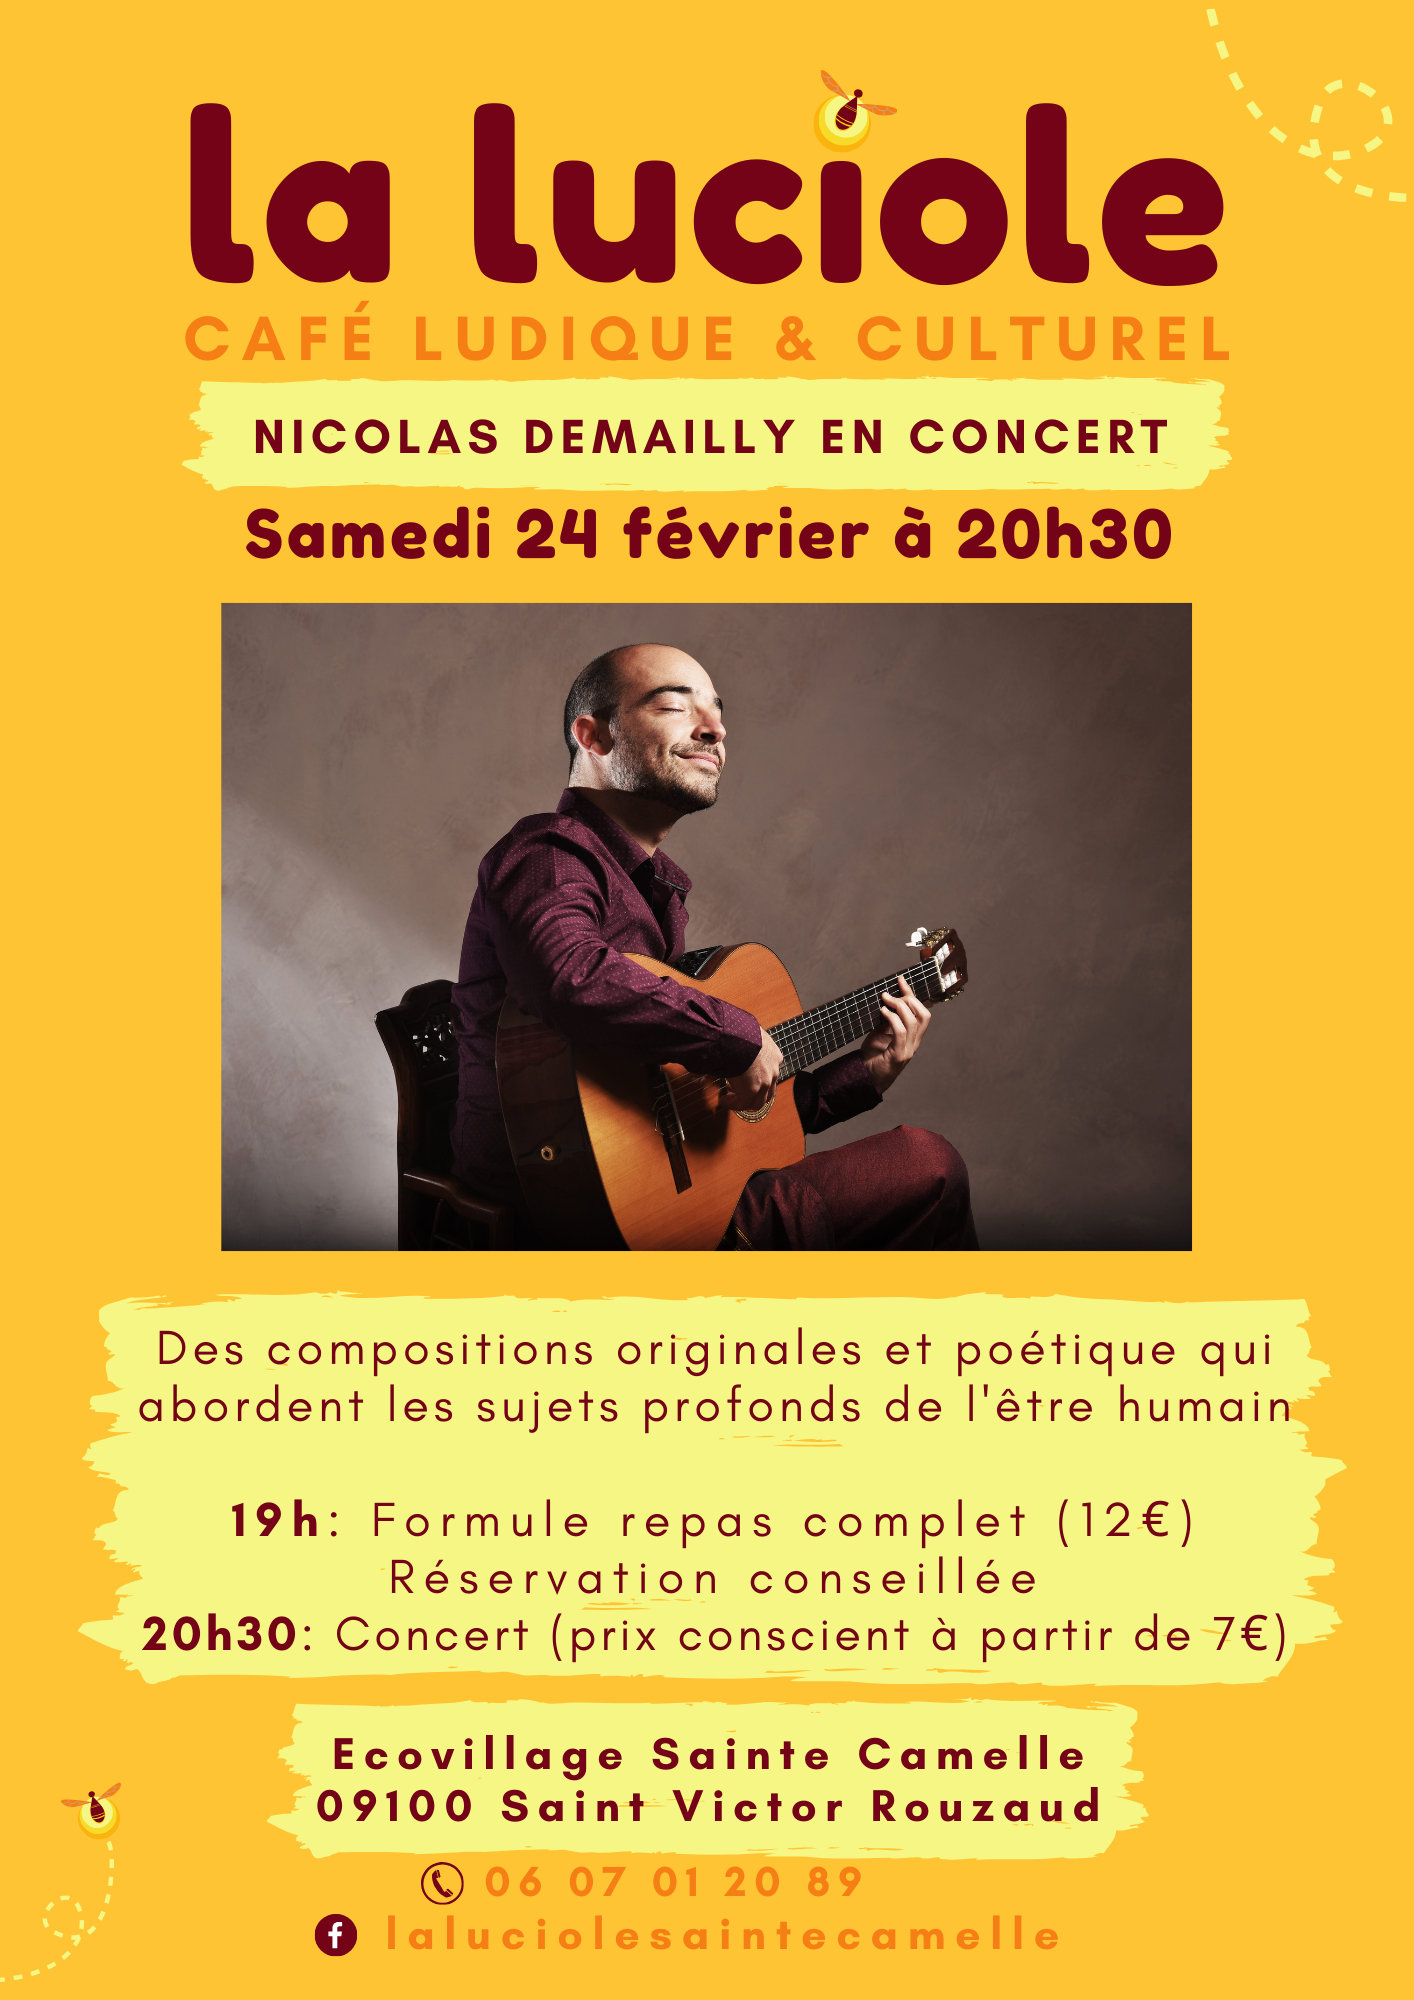 Nicolas Demailly en concert